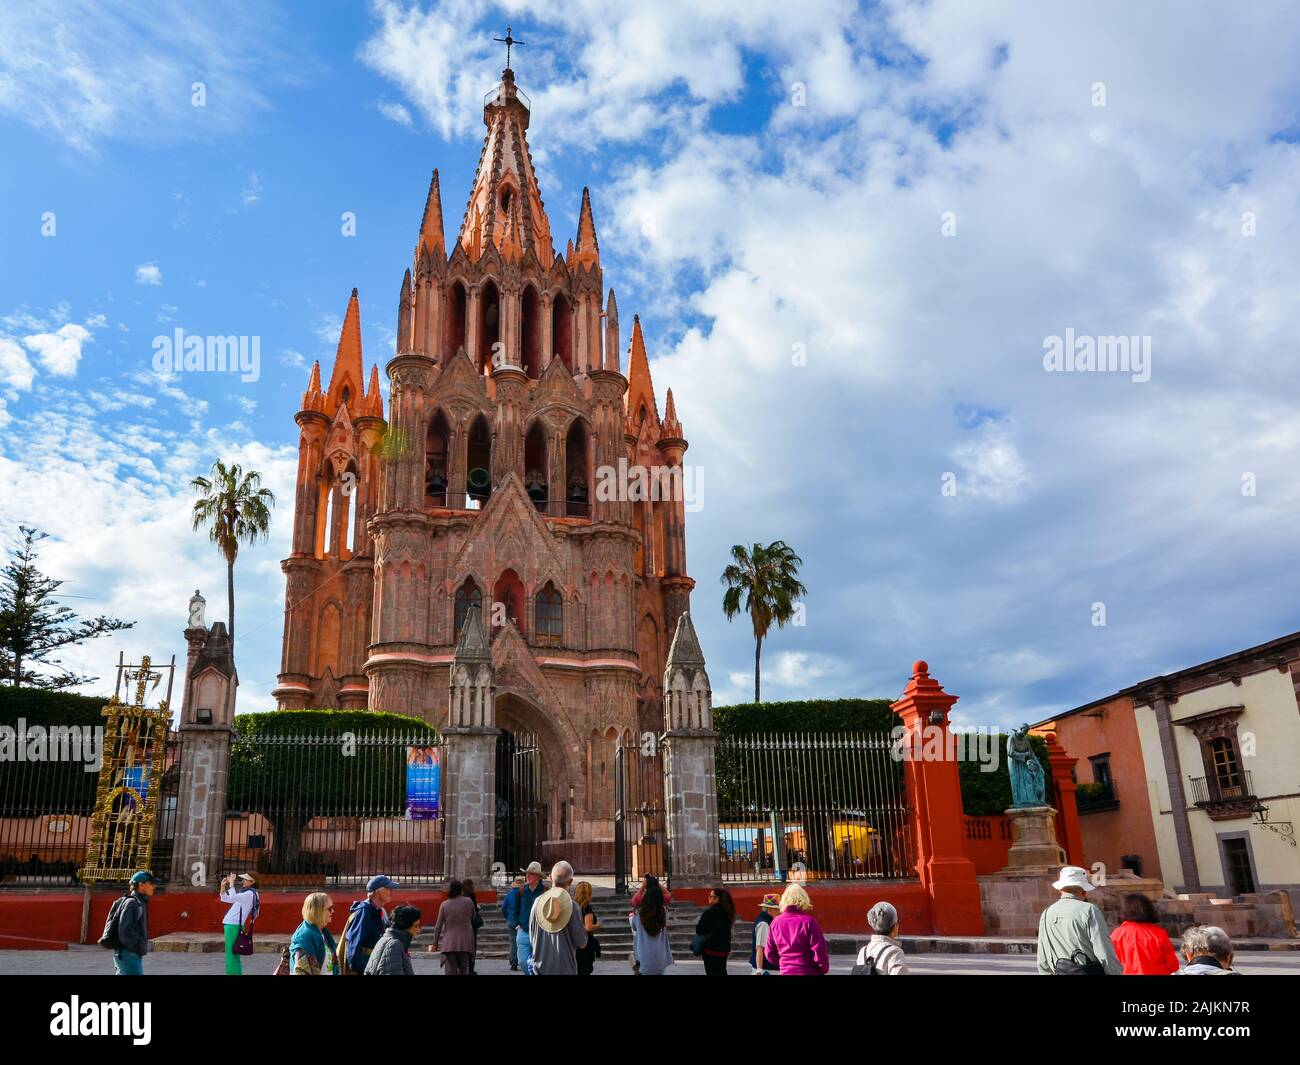 San Miguel de Allende, Mexique - 22 octobre 2019 : foule de touristes se rassemblent en face de l'église de Saint Michel Archange. Banque D'Images